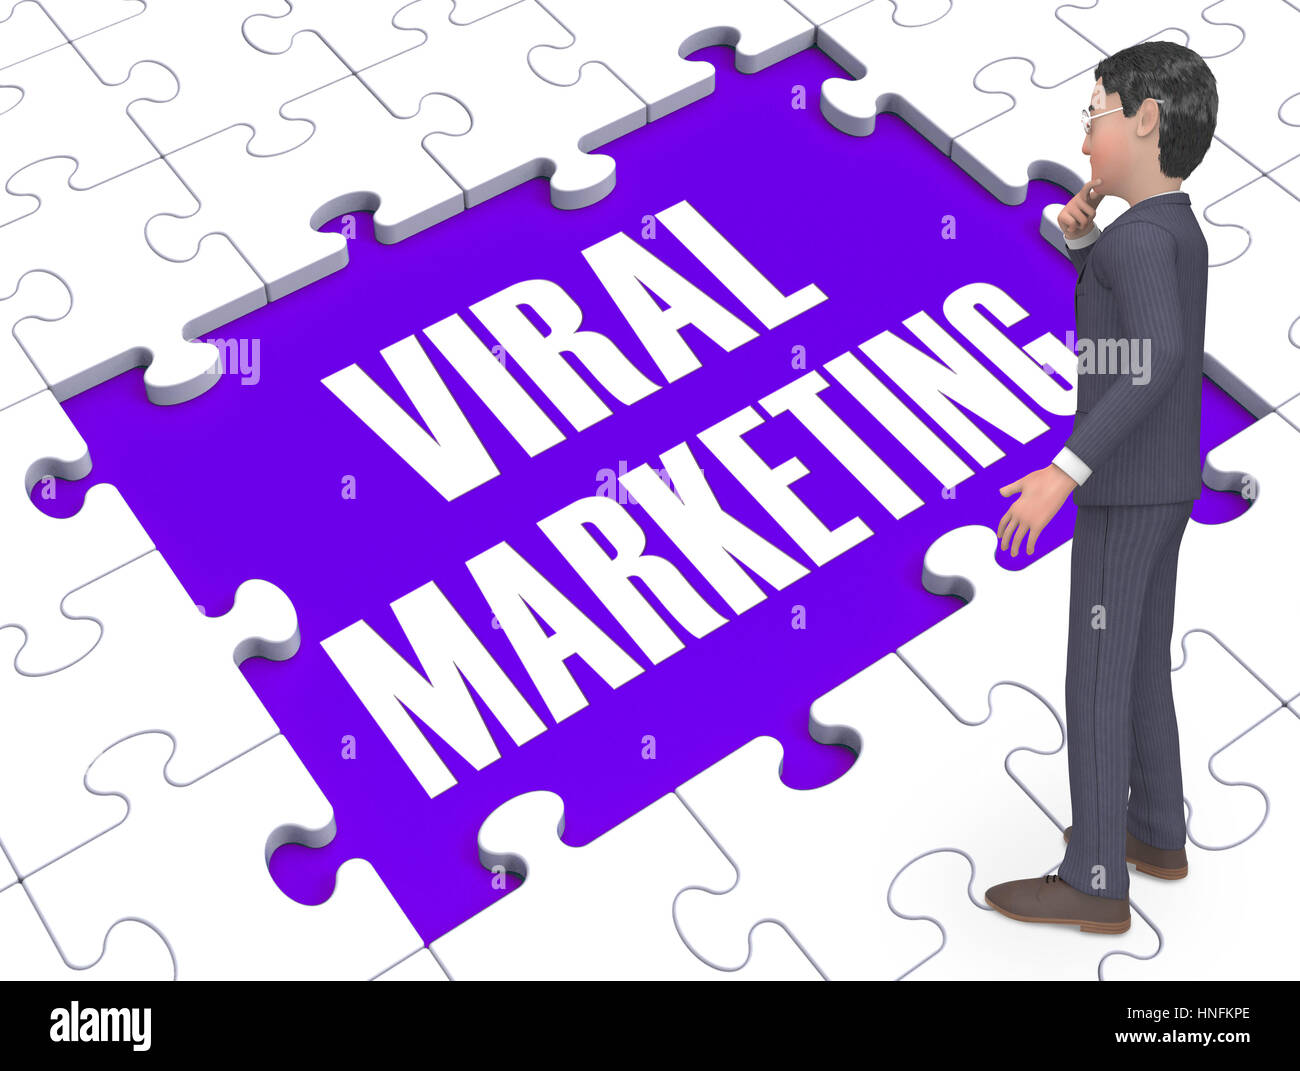 Marketing viral mostrando estrategias de publicidad y anuncios en medios de comunicación social 3D Rendering Foto de stock